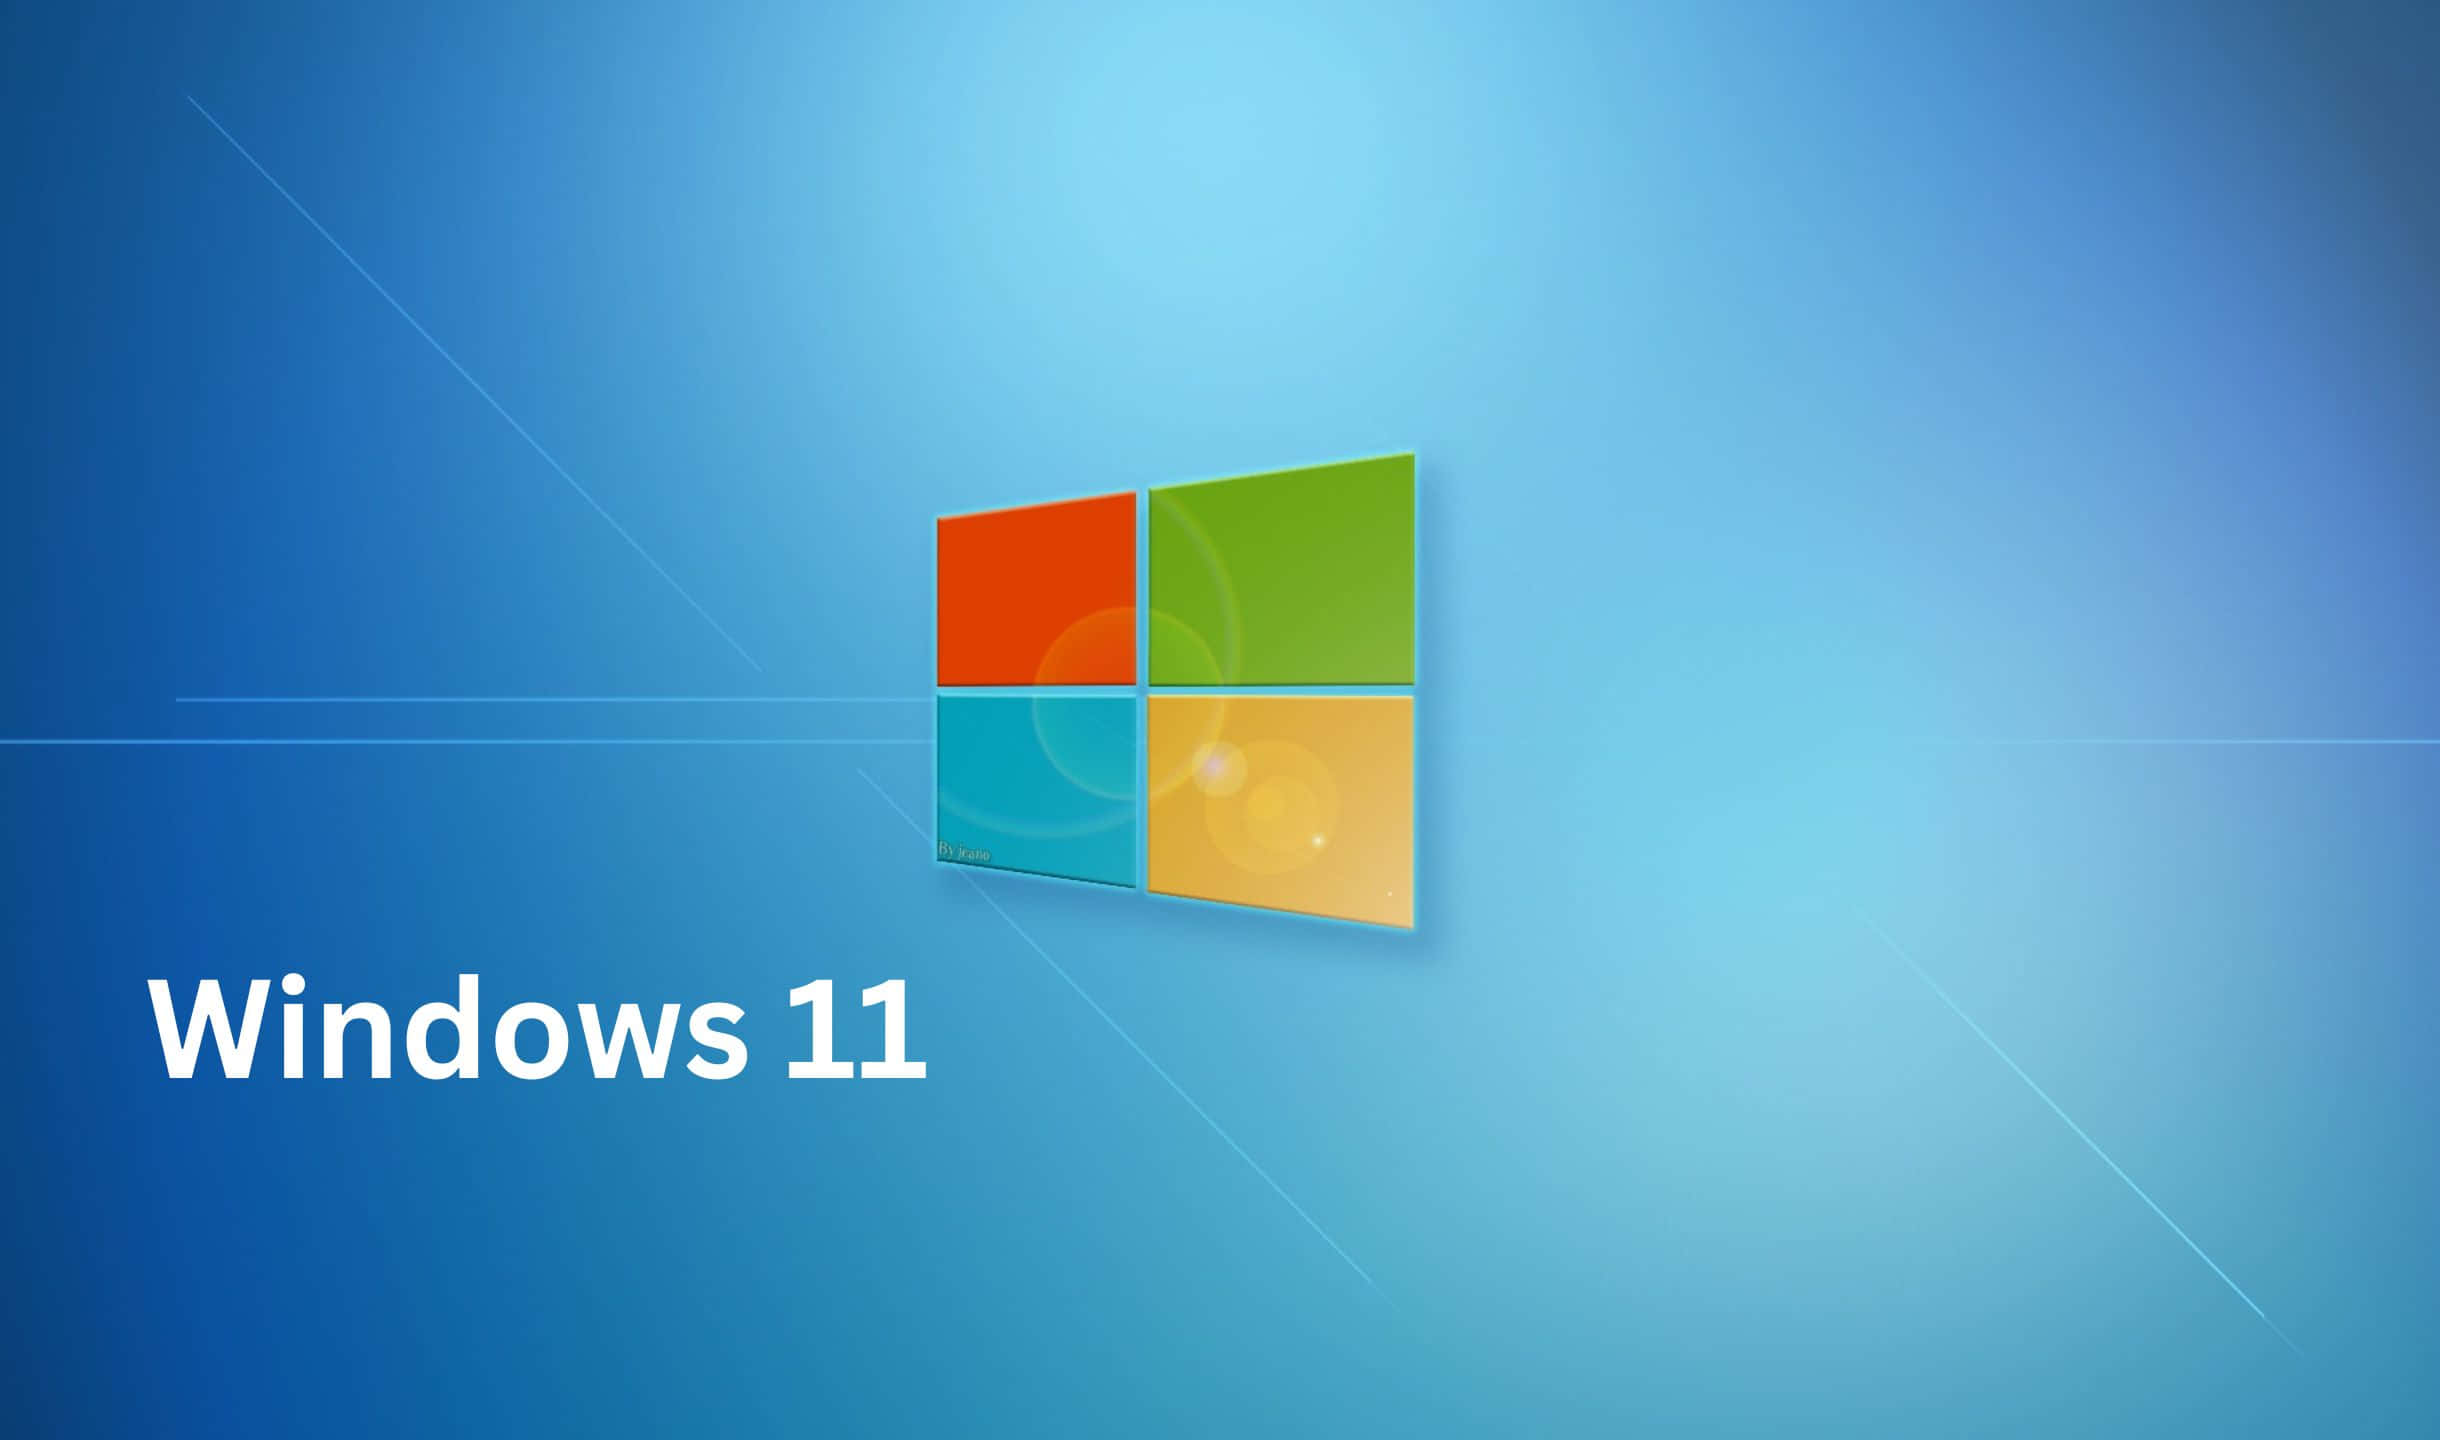 Logode Windows 11 Sobre Un Fondo Azul